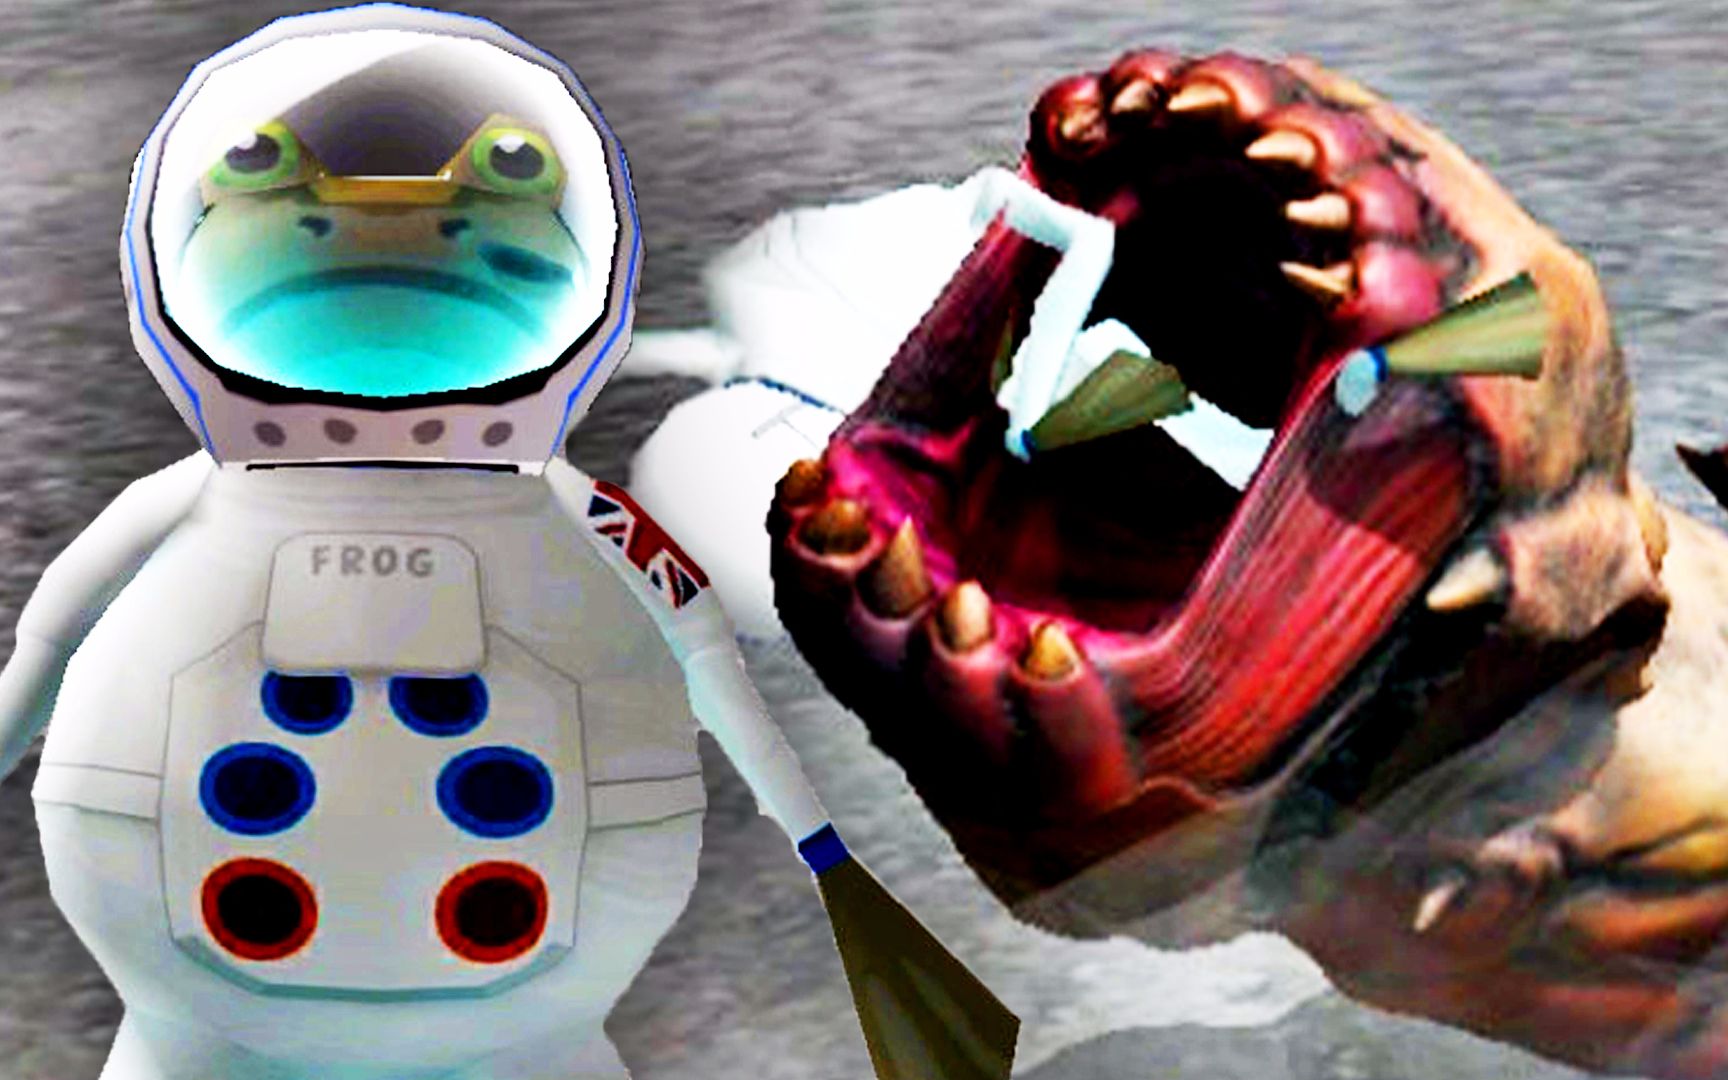 【屌德斯解说】 VR模拟环太平洋机甲 真人体验在驾驶舱内操控巨型环太平洋机器人与怪兽战斗！_单机游戏_游戏_bilibili_哔哩哔哩